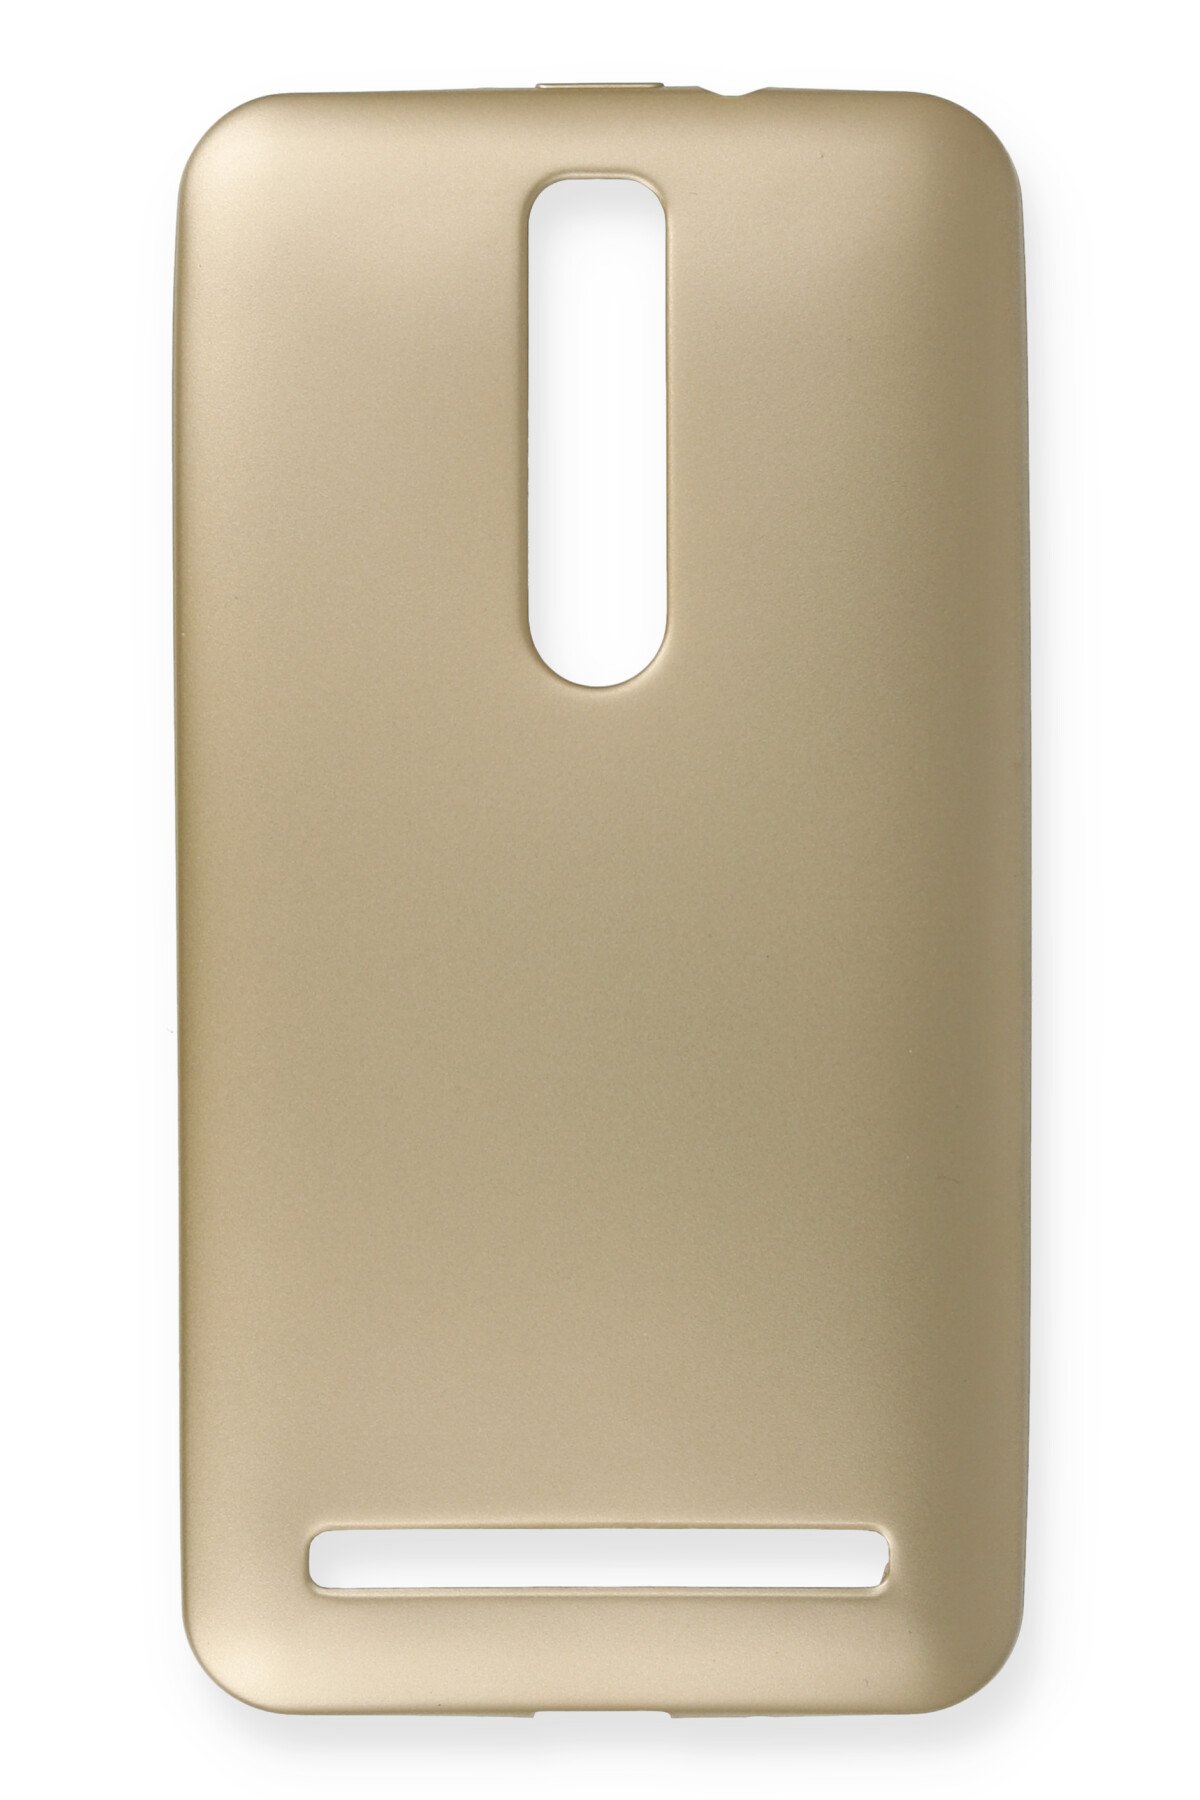 Newface Asus Zenfone 2 (ze551ml) Kılıf First Silikon - Gold